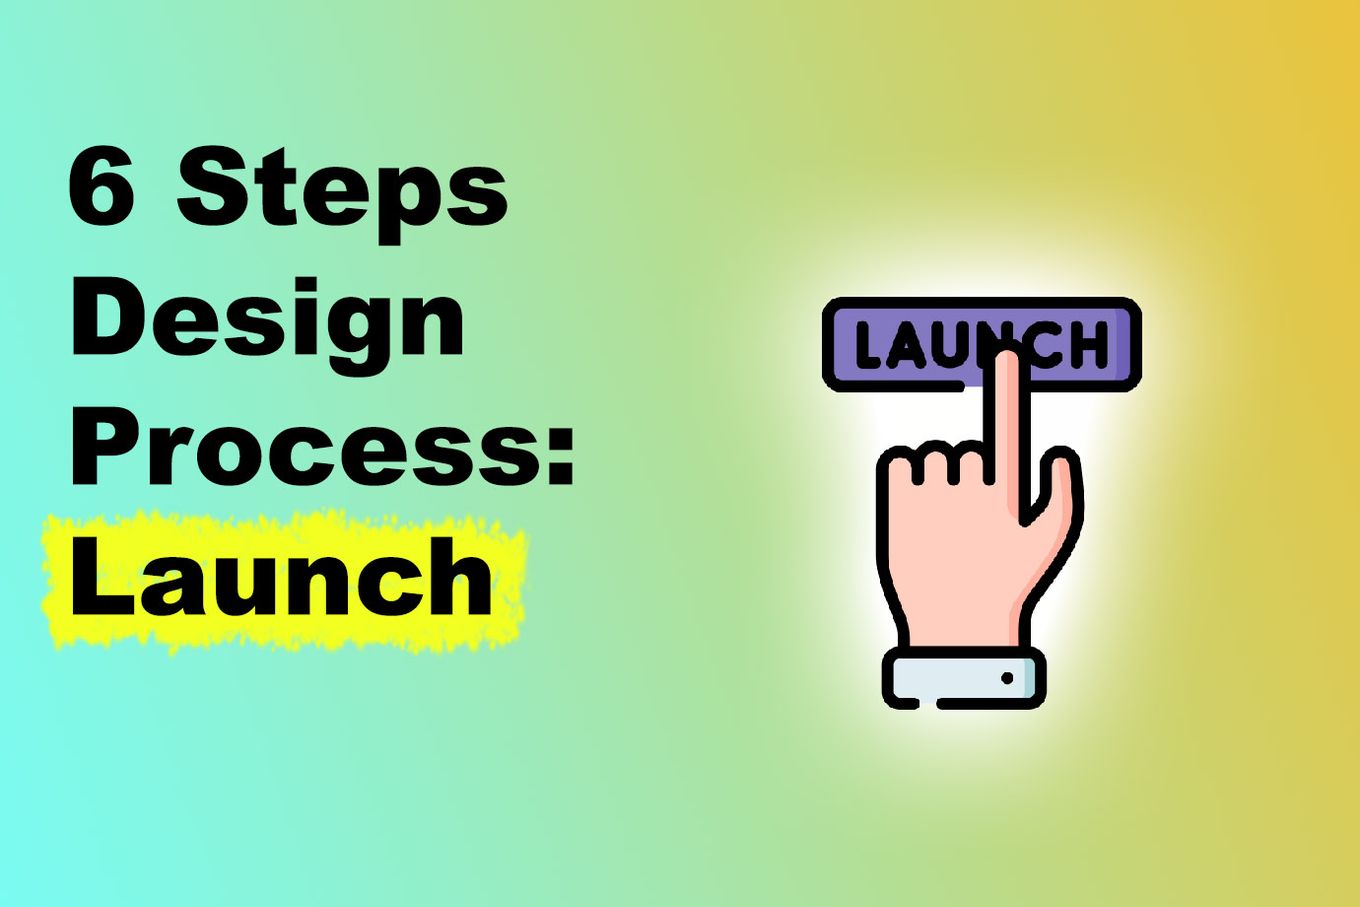 6 Steps Design Process, Launch